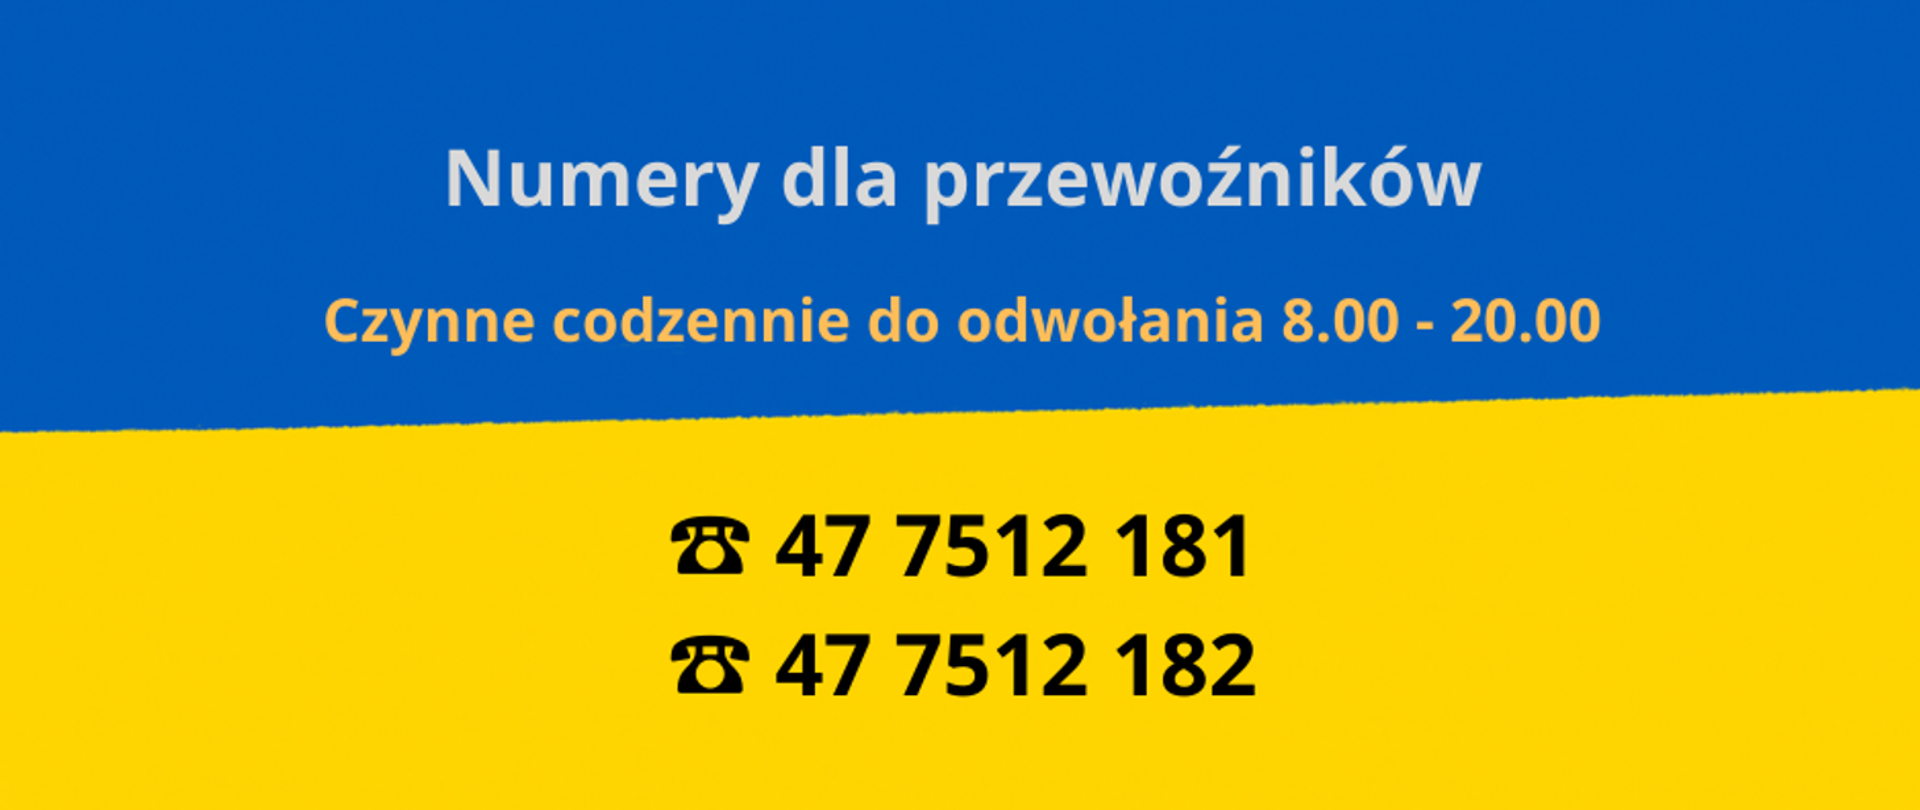 Grafika w barwach flagi Ukrainy, góra niebieska, dół żółty, na niebieskim tle napis numery do przewoźników czynne codziennie do odwołania 8.00 - 20.00, na żółtym tle numery telefonów 477512181 i 477512182.